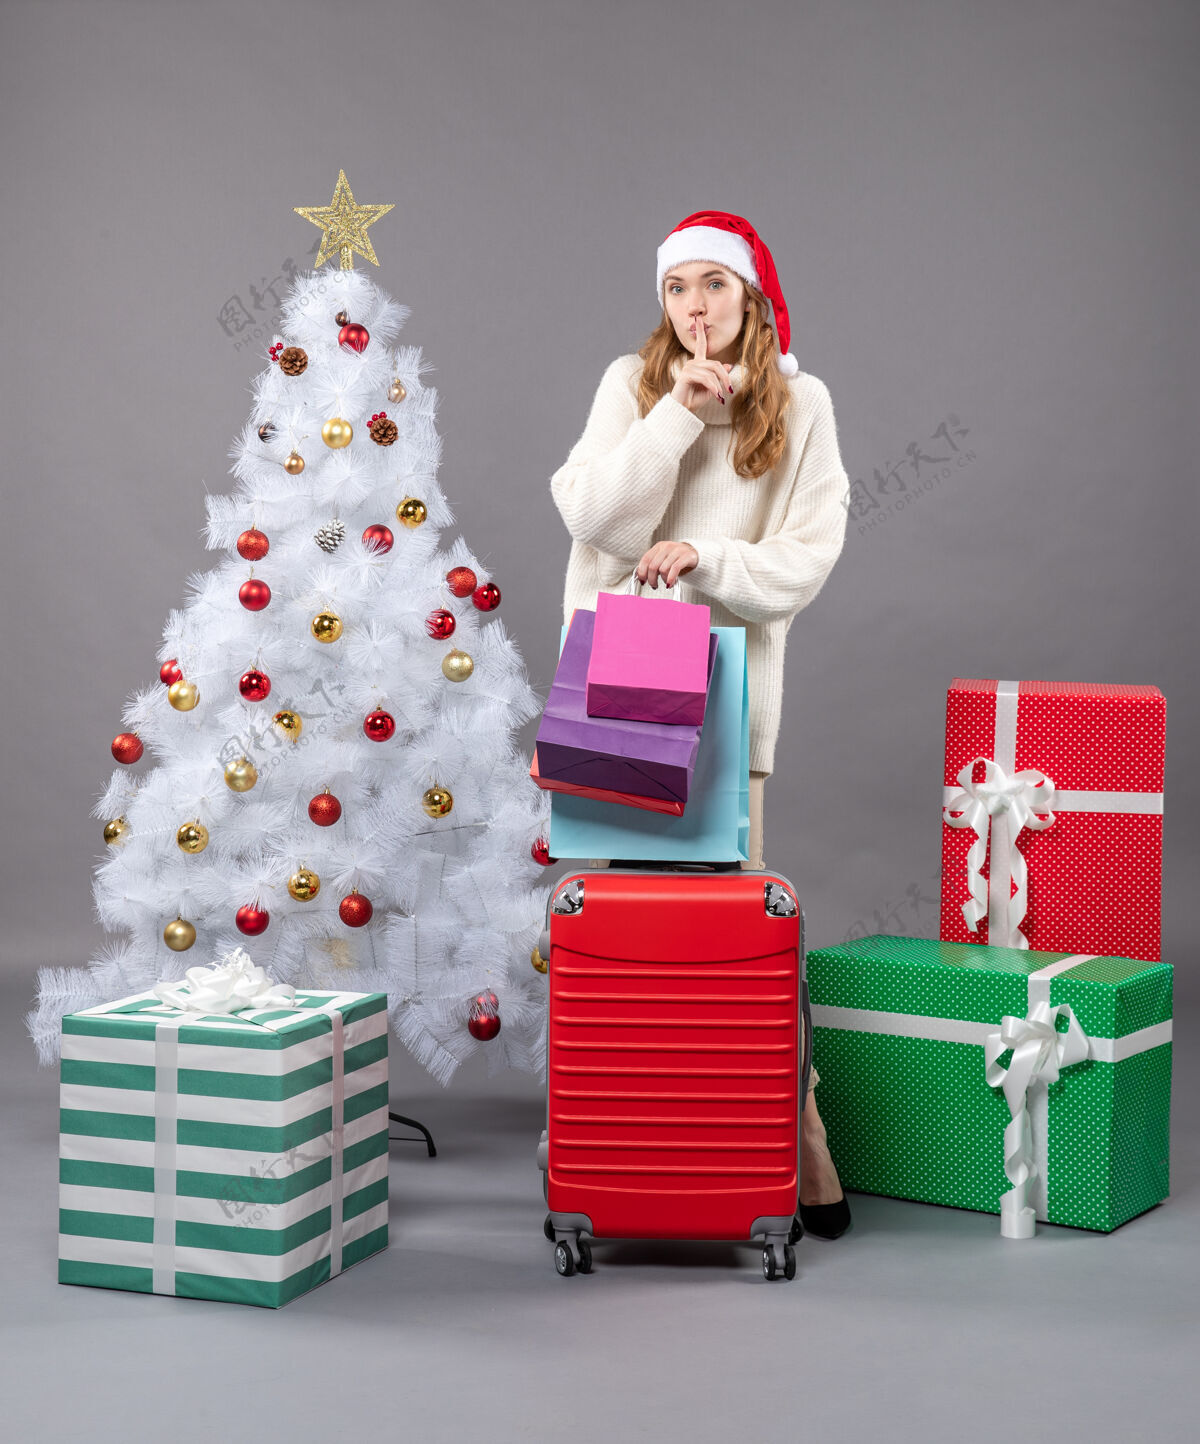 行李正面图金发女孩 戴着圣诞帽 手里拿着红色的手提包 购物袋上写着“嘘”金发女孩盒子圣诞老人